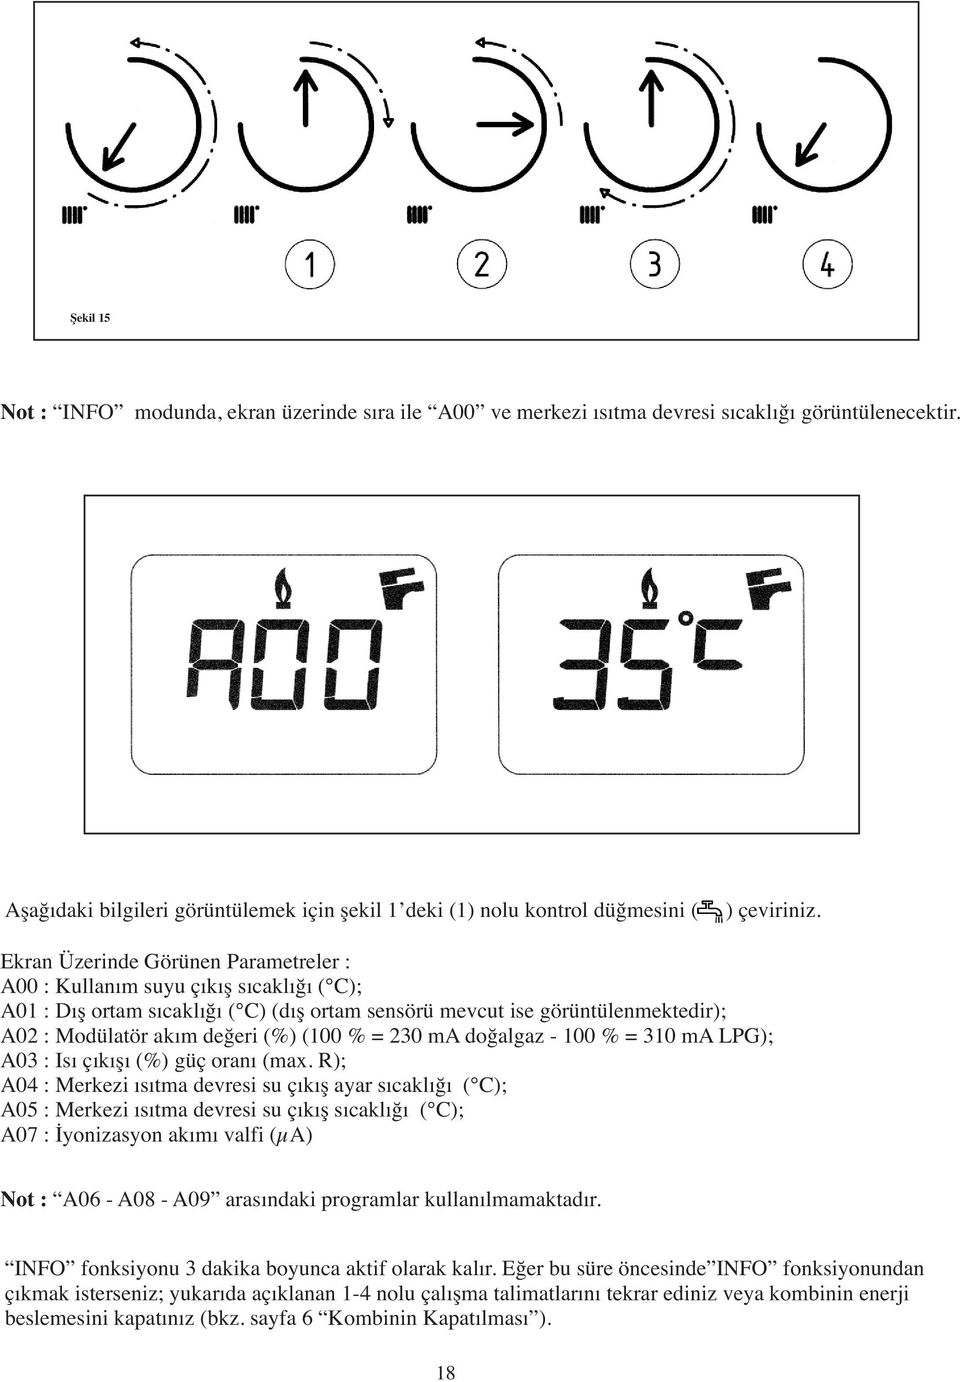 Ekran Üzerinde Görünen Parametreler : A00 : Kullanım suyu çıkış sıcaklığı ( C); A01 : Dış ortam sıcaklığı ( C) (dış ortam sensörü mevcut ise görüntülenmektedir); A02 : Modülatör akım değeri (%) (100